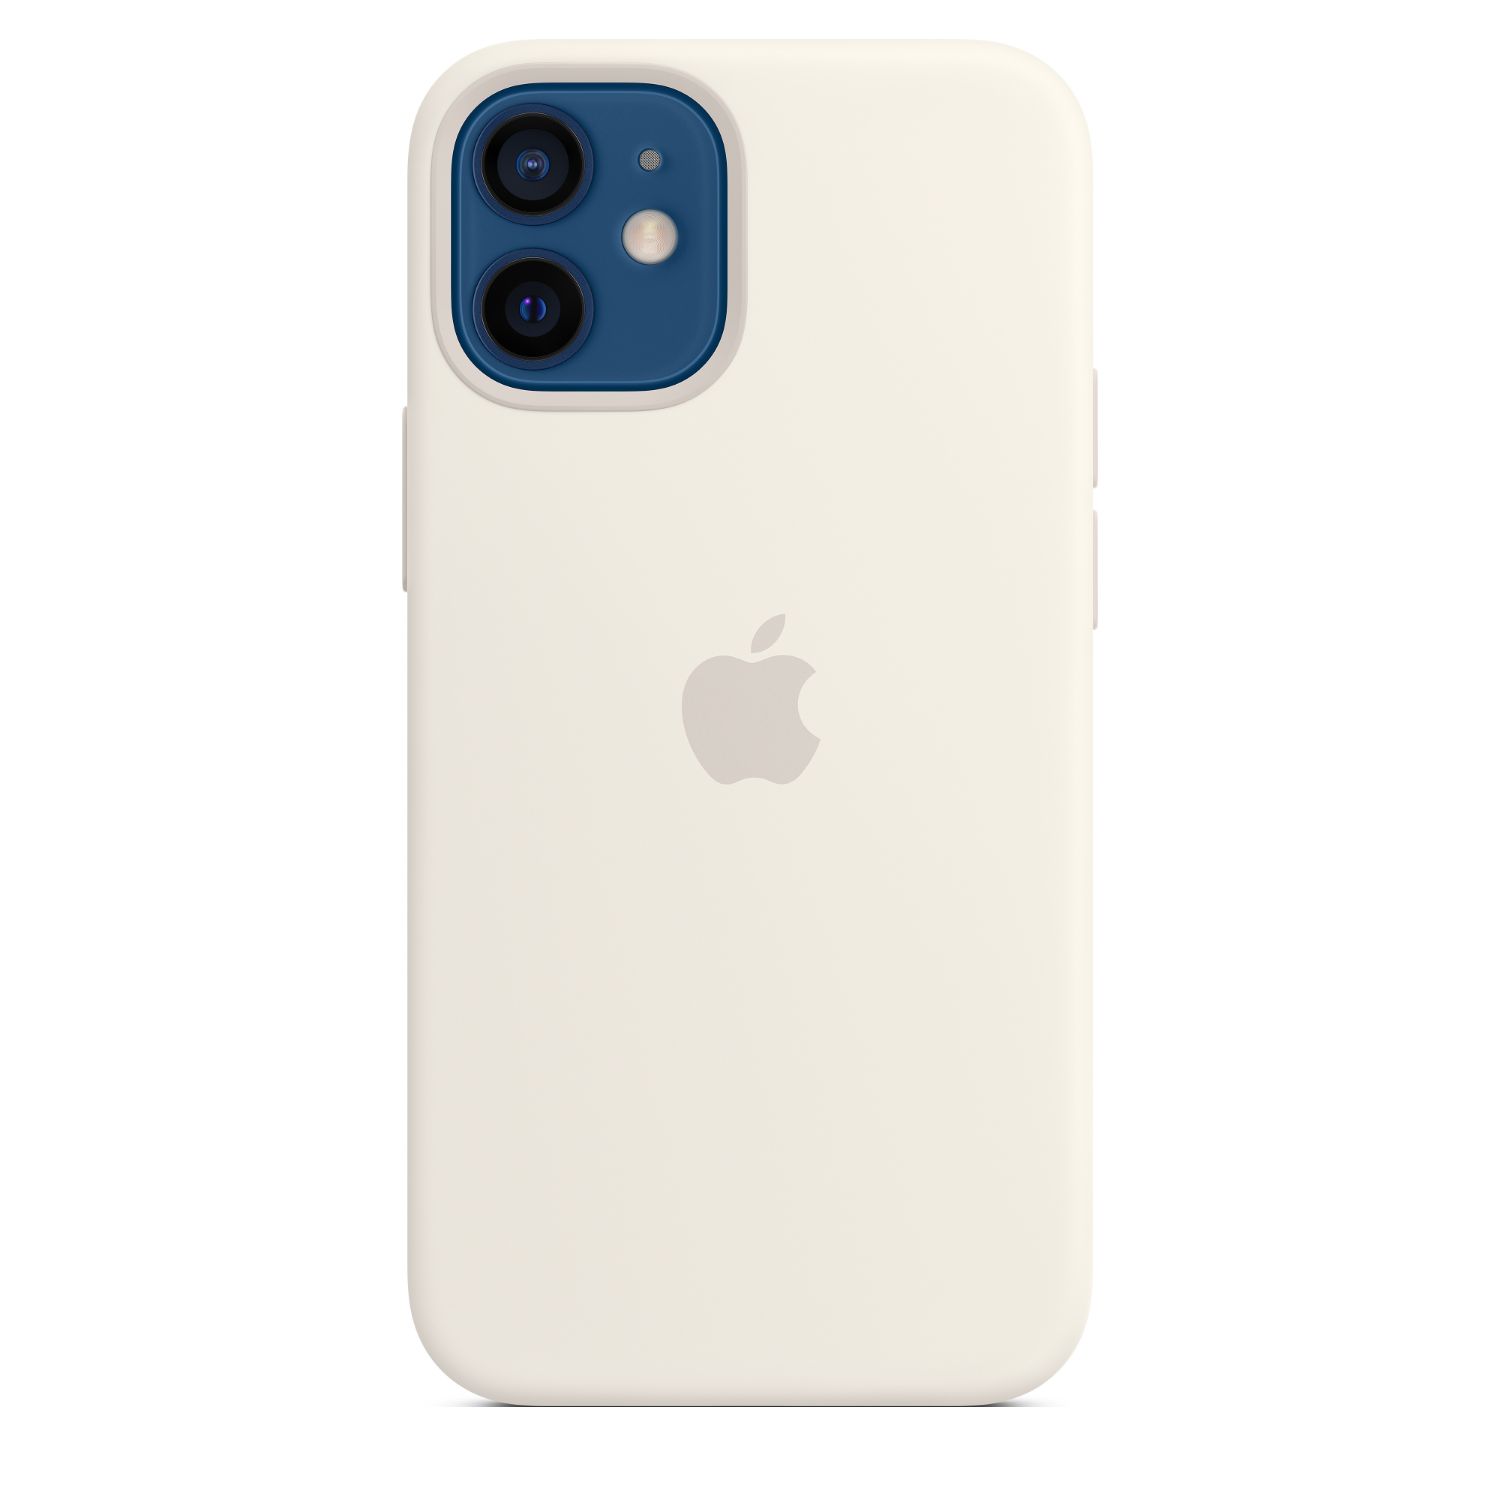 MHKV3ZM/A - Funda de Silicona Apple con MagSafe para iPhone 12 Mini Blanco (MHKV3ZM/A)